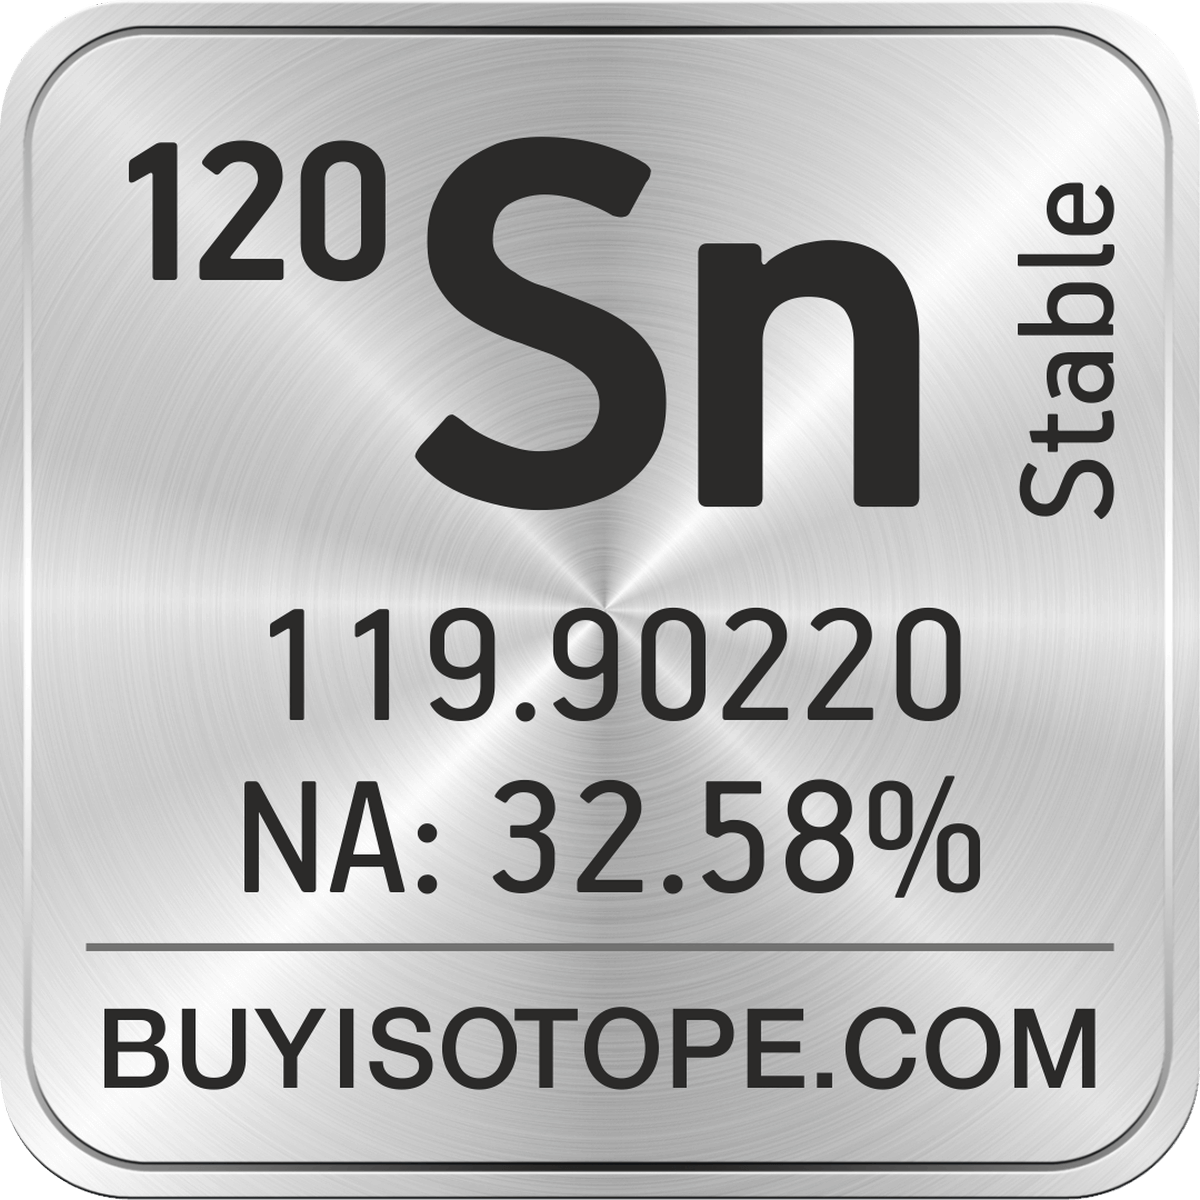 Tin-120, Tin-120 Isotope, Enriched Tin-120, Tin-120 Metal